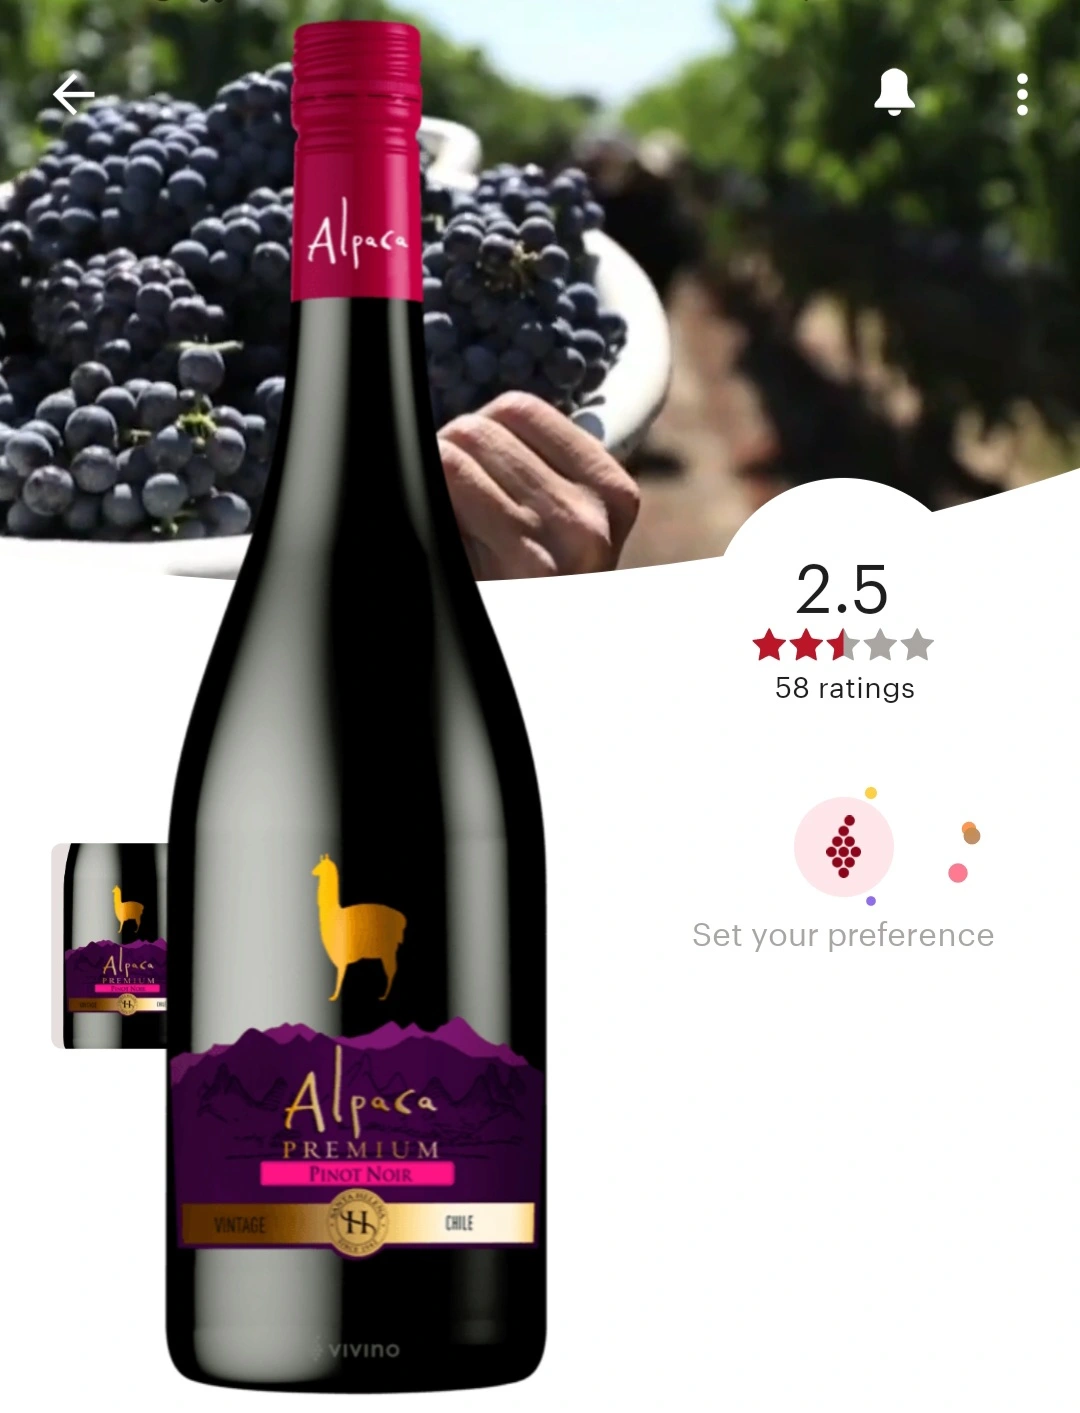 알파카 프리미엄 피노누아(Alpaca Premium Pinot Noir) 비비노 평점